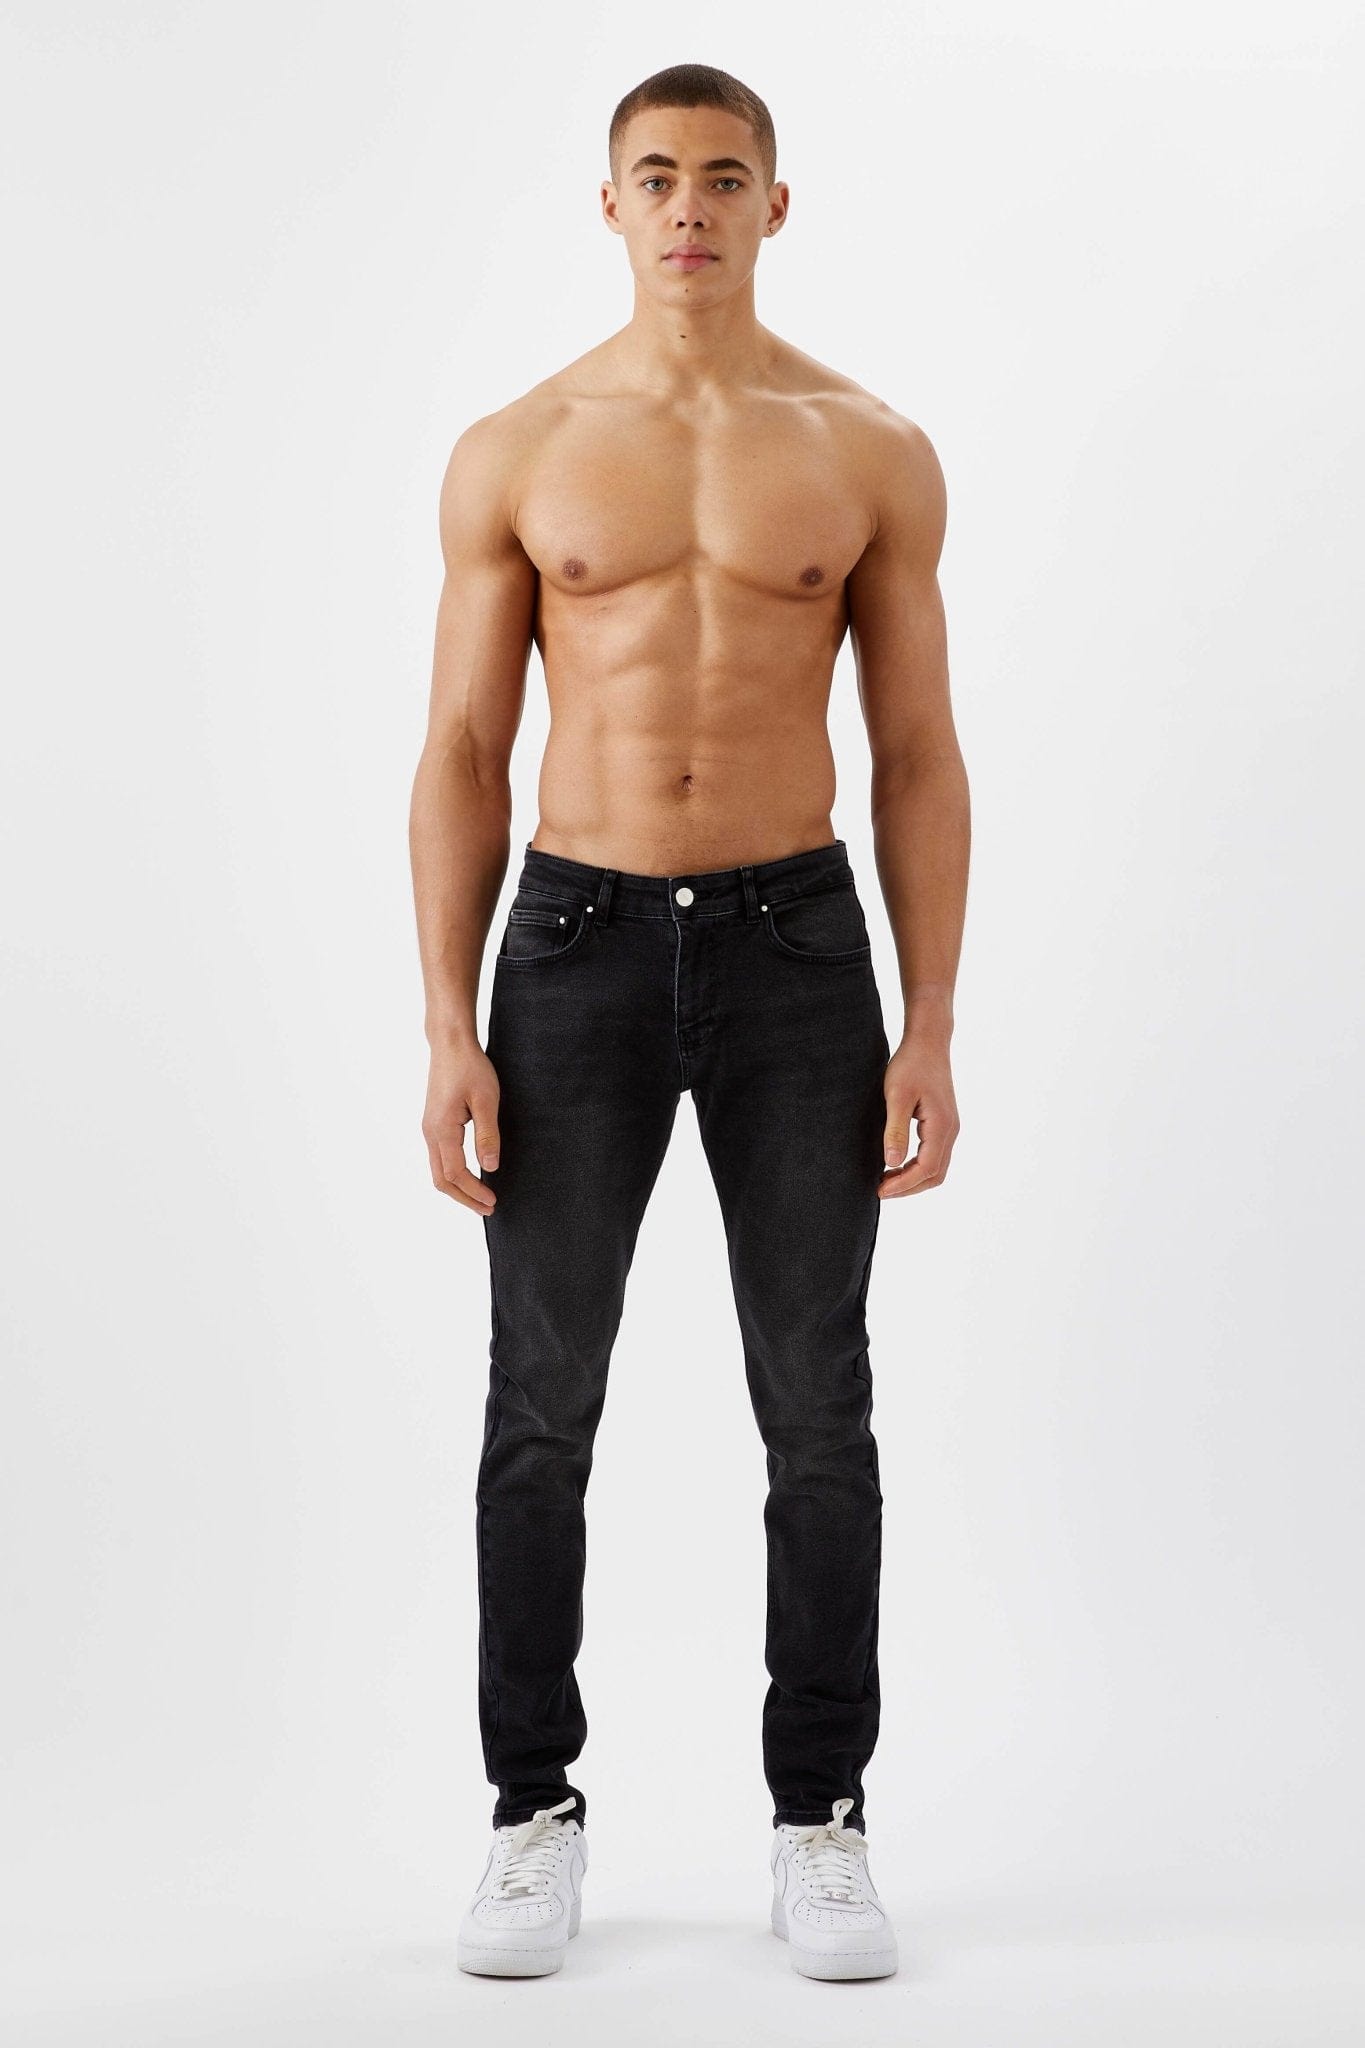 Legend London Slim Fit Jeans 2.0 SLIM FIT JEANS 2.0 - CHARCOAL GREY